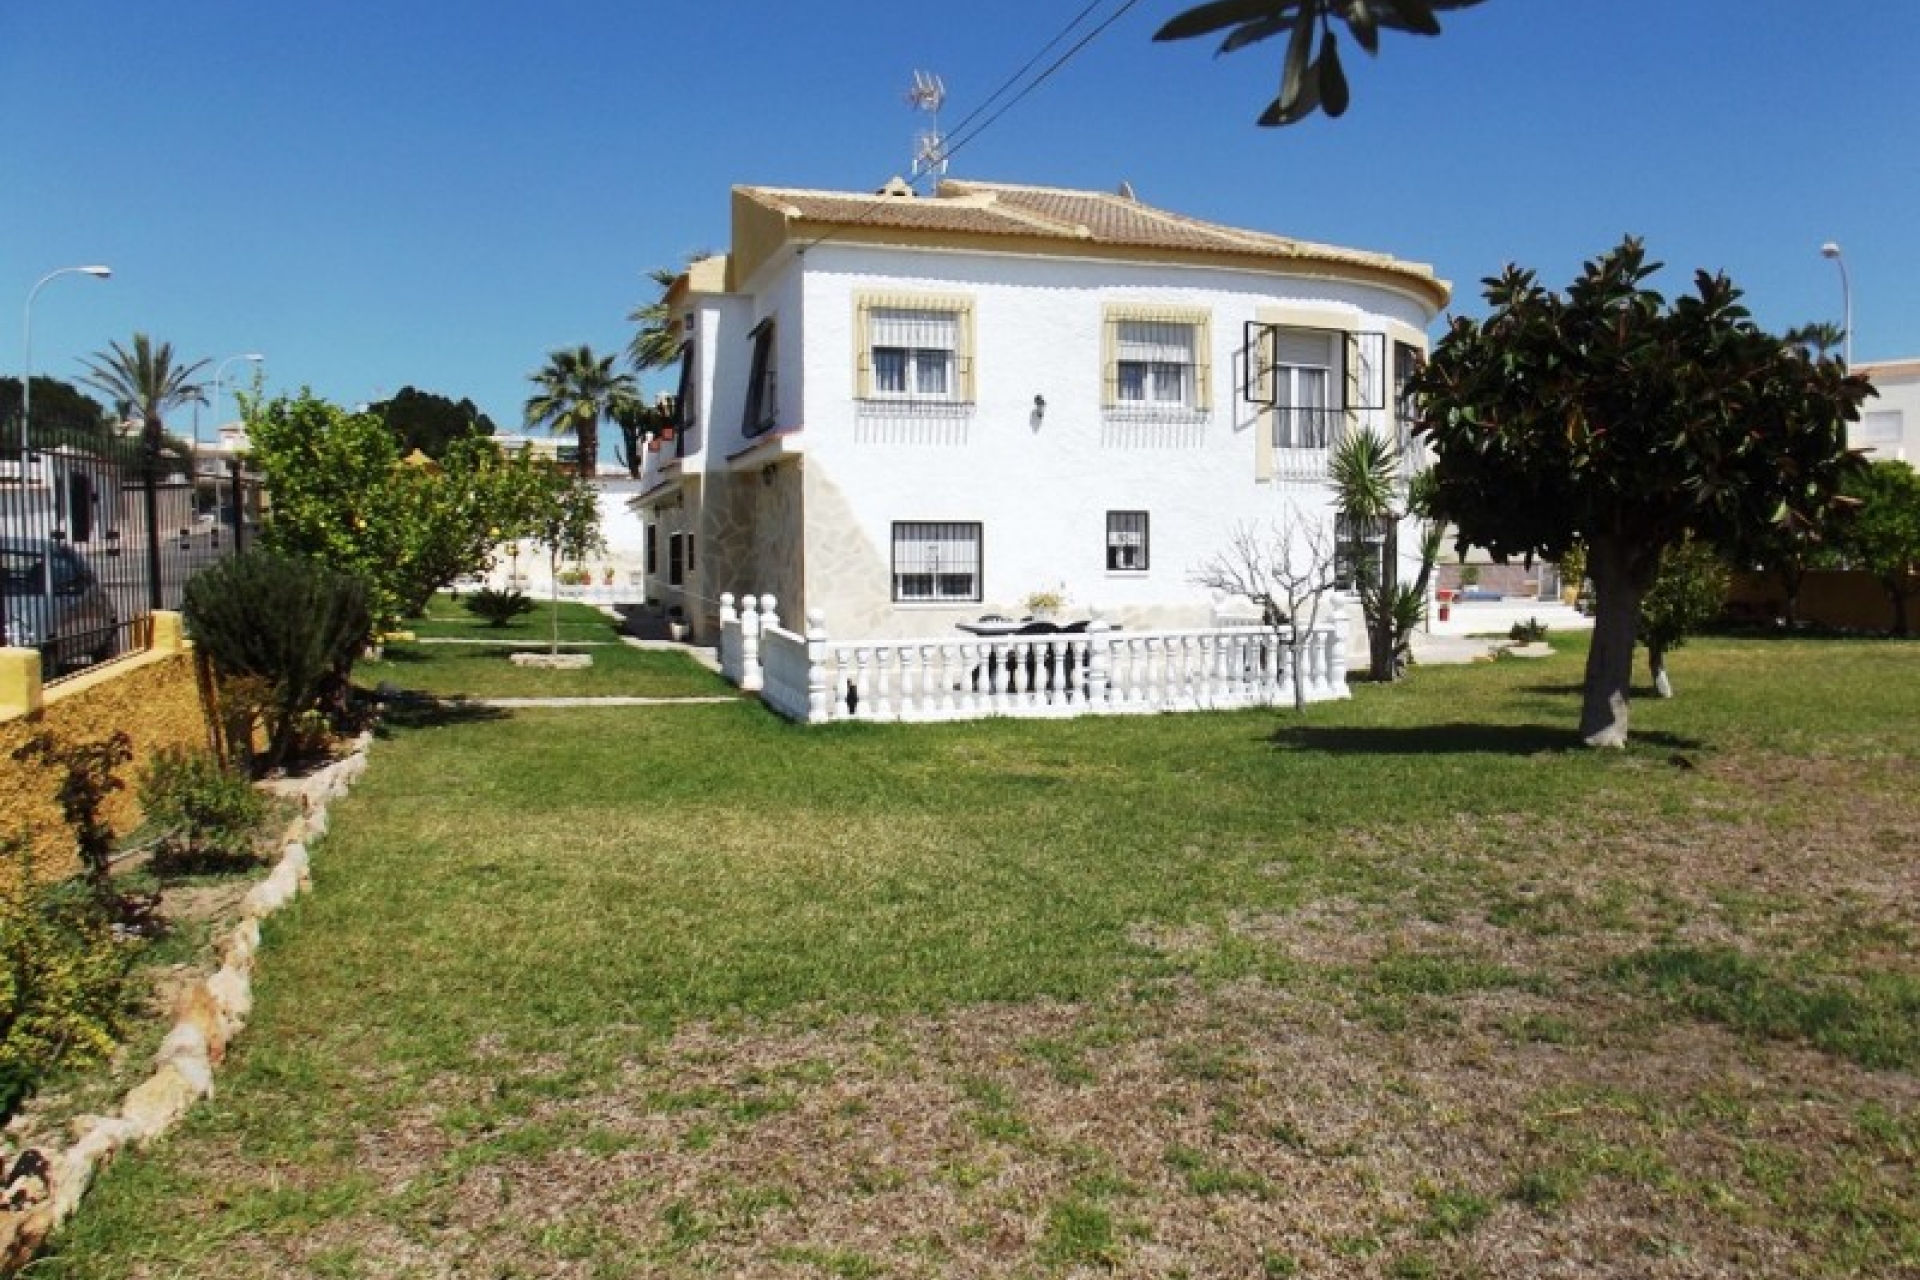 Cheap bargain detached villa for sale La Siesta Costa Blanca